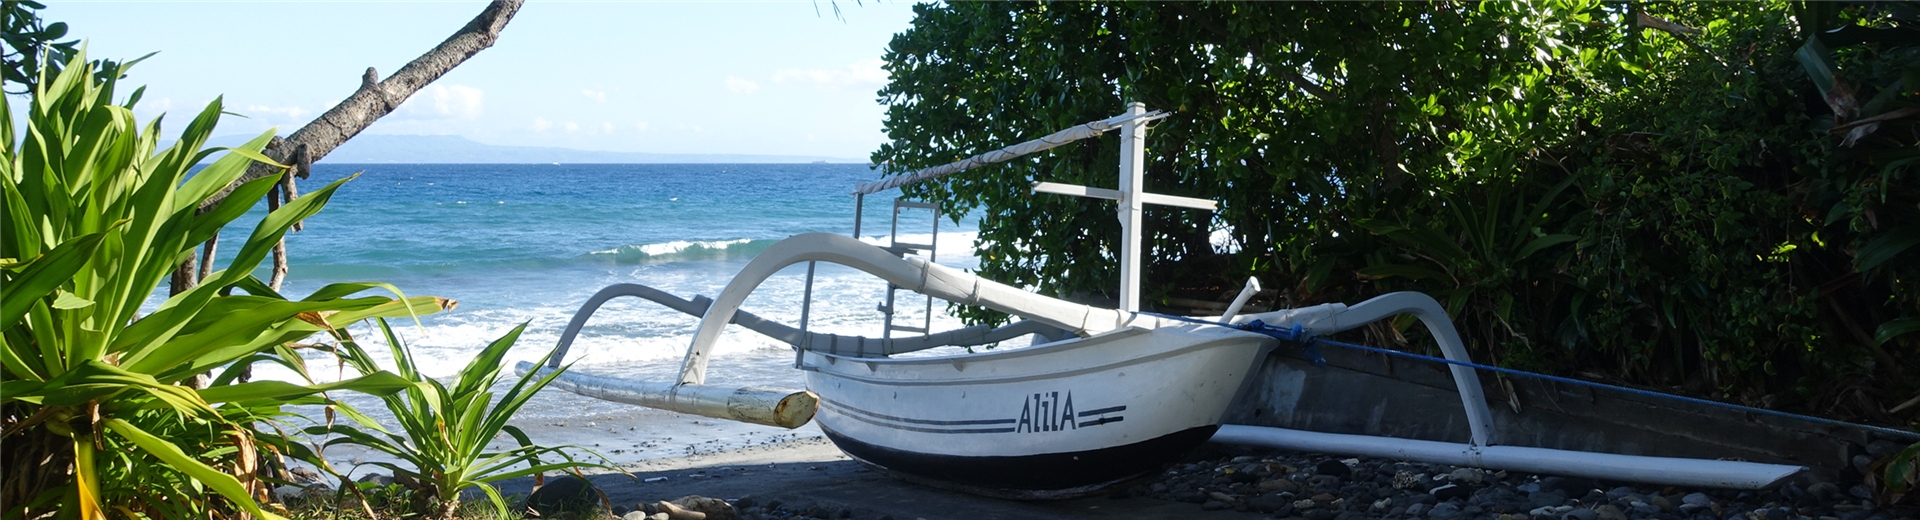 巴里島飯店推薦-阿里拉曼格斯渡假村